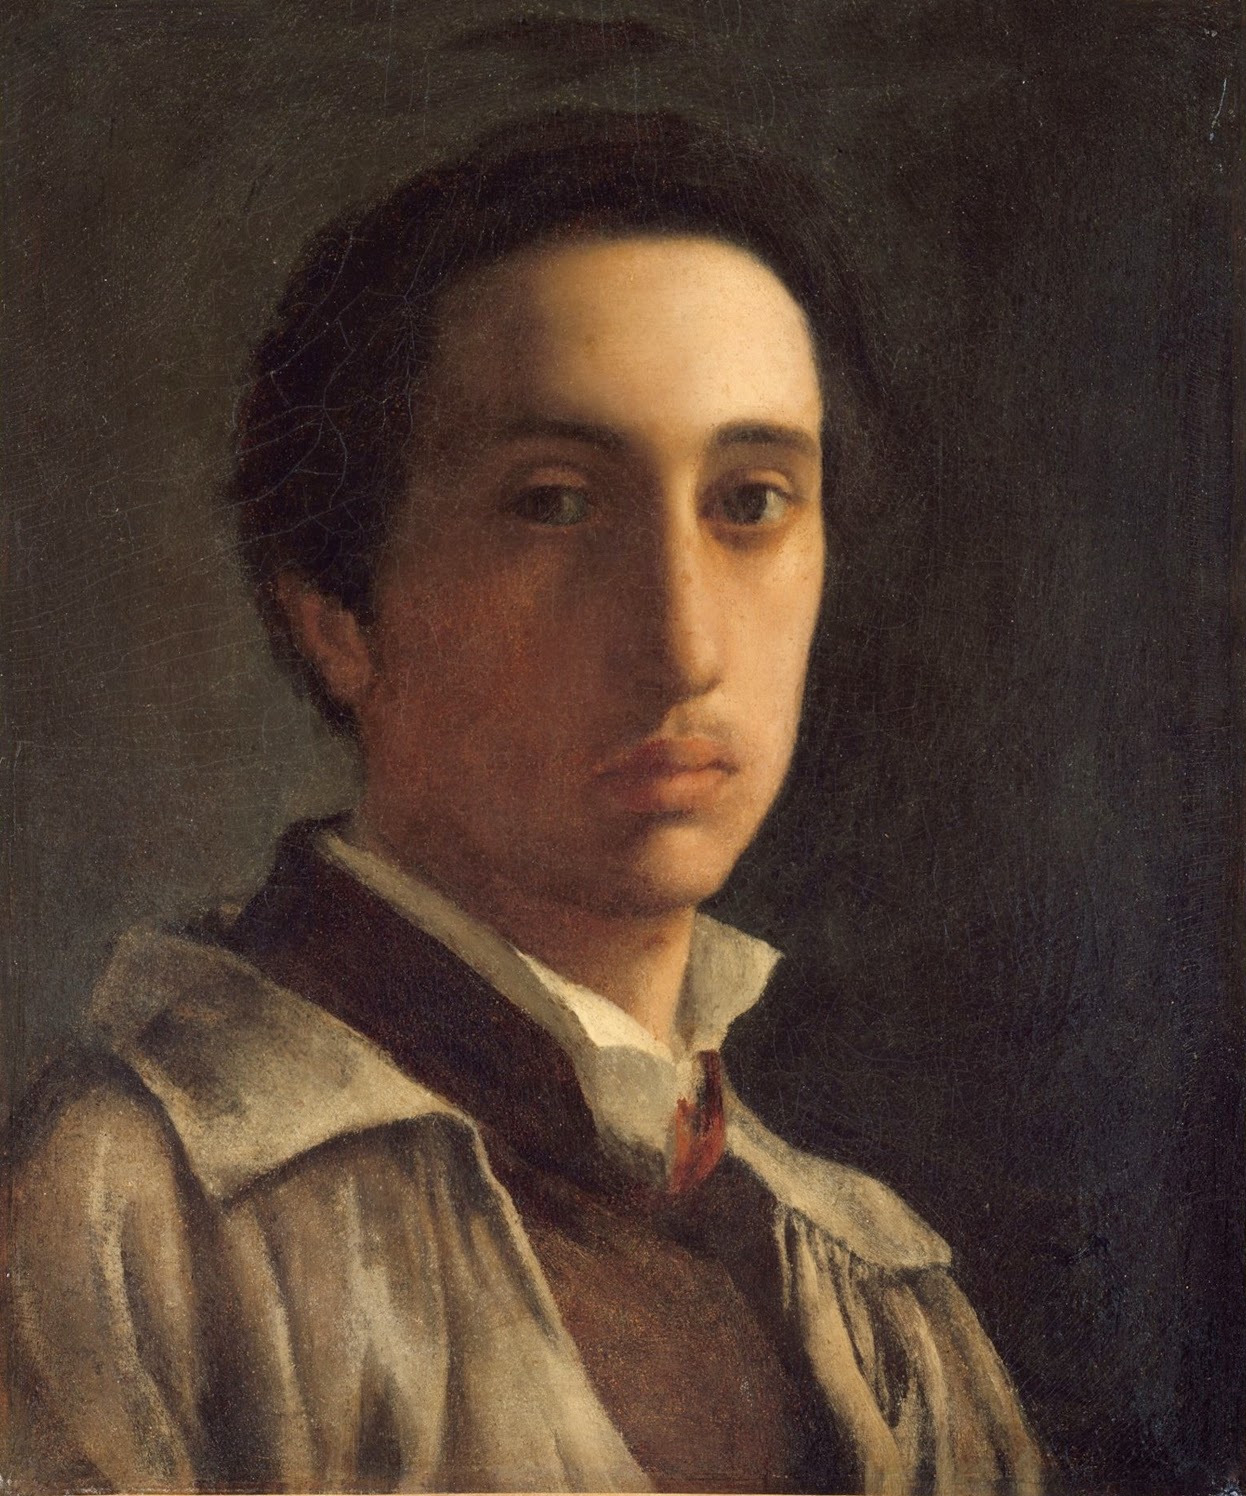 Edgar+Degas-1834-1917 (181).jpg